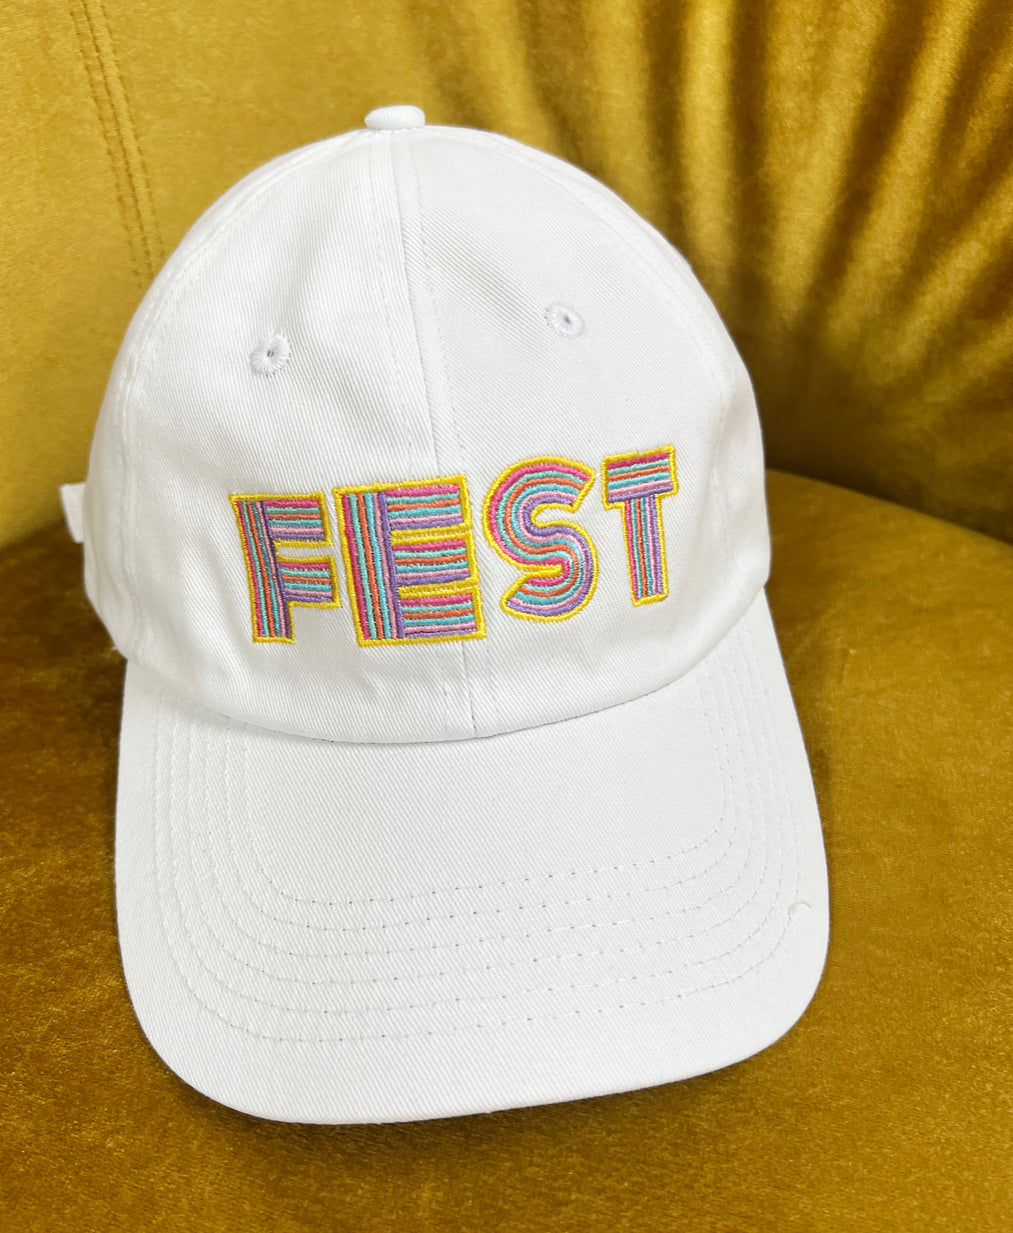 FEST hats